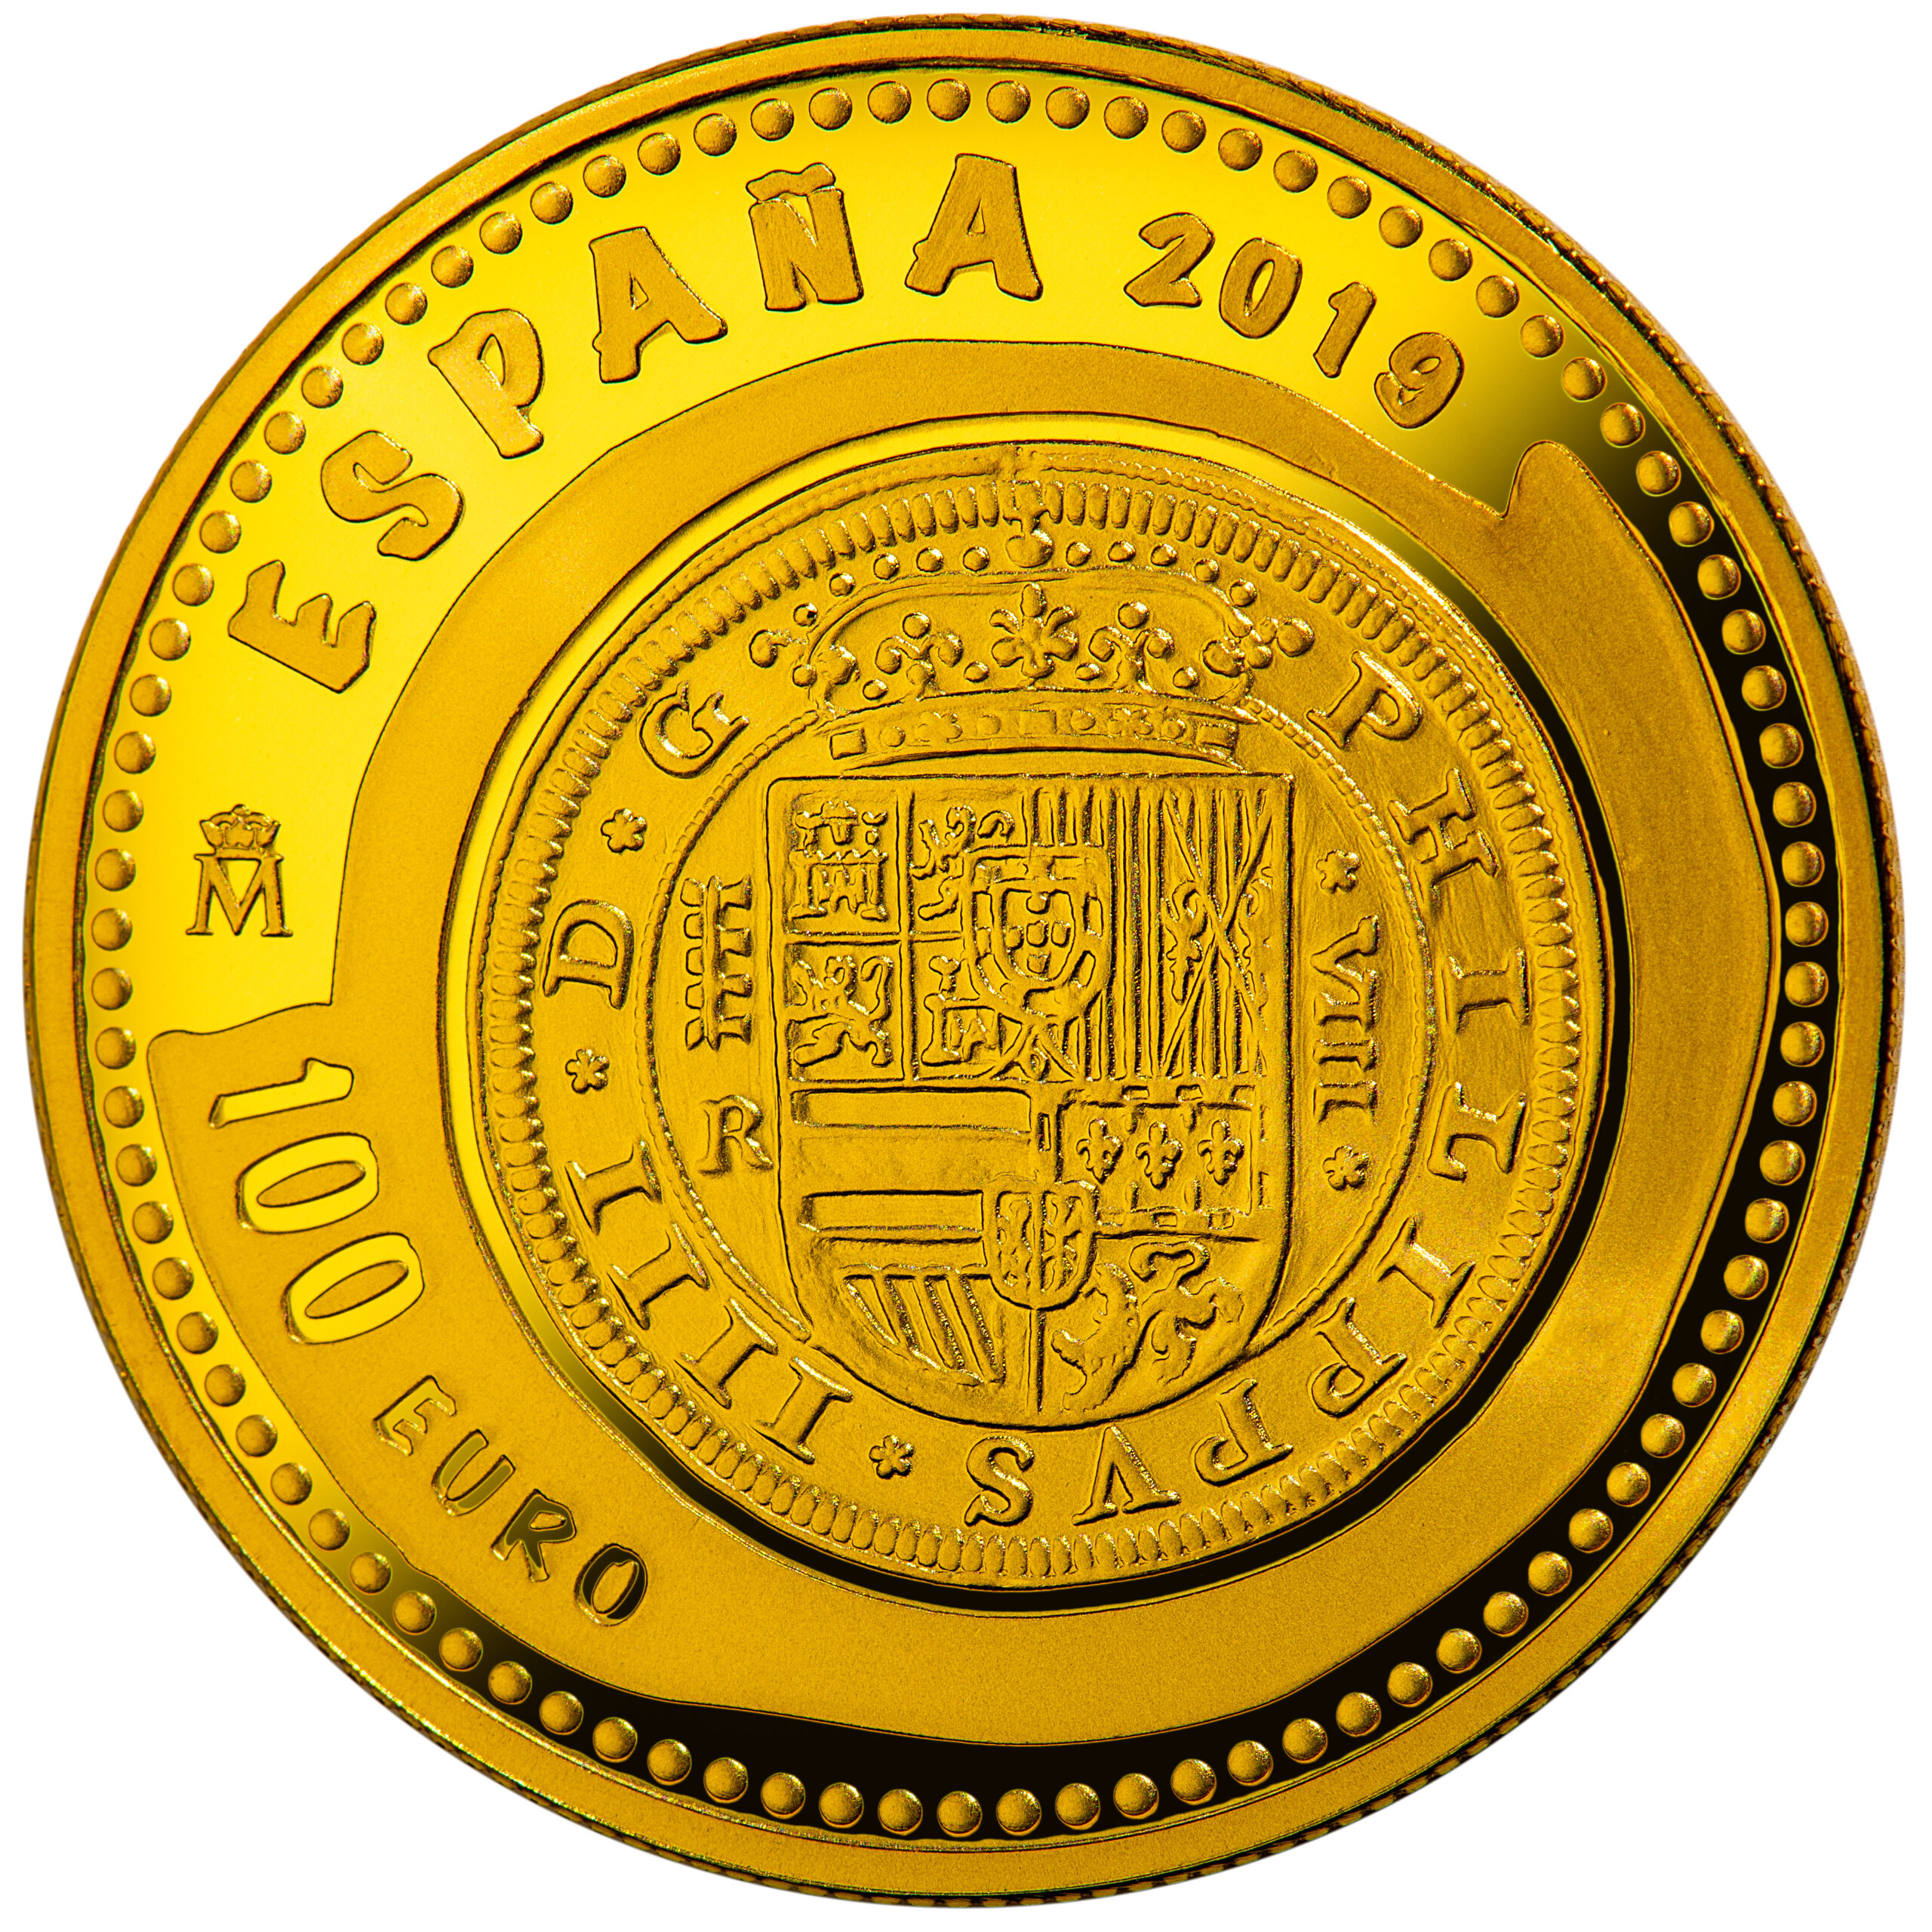 ES 100 Euro 2019 Real Casa de la Moneda logo